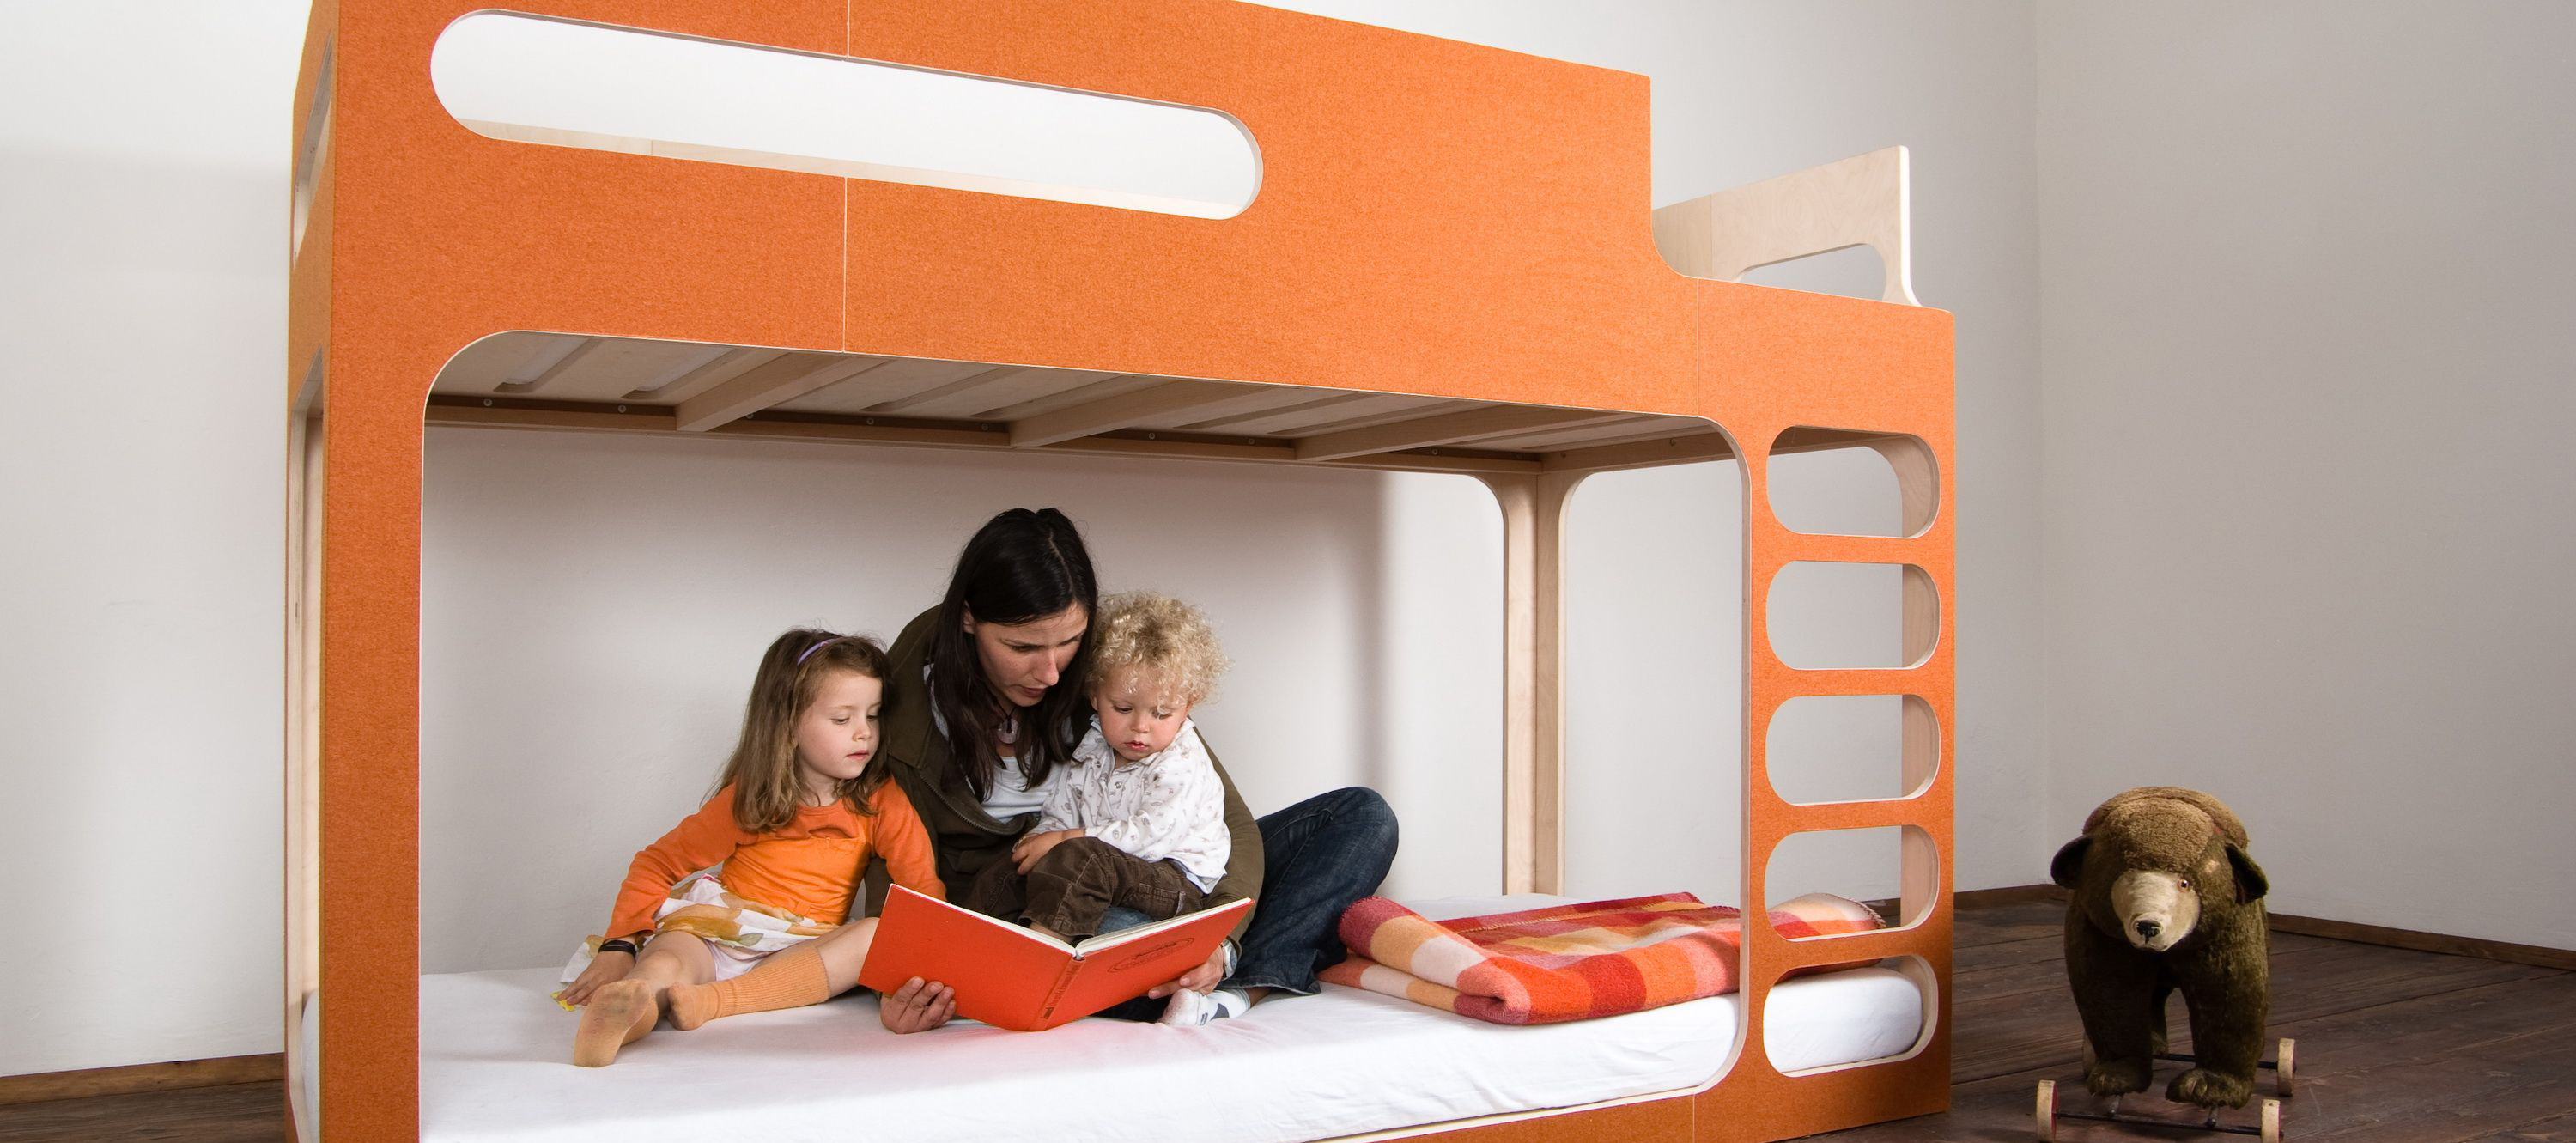 Как поставить кровать в детской комнате?